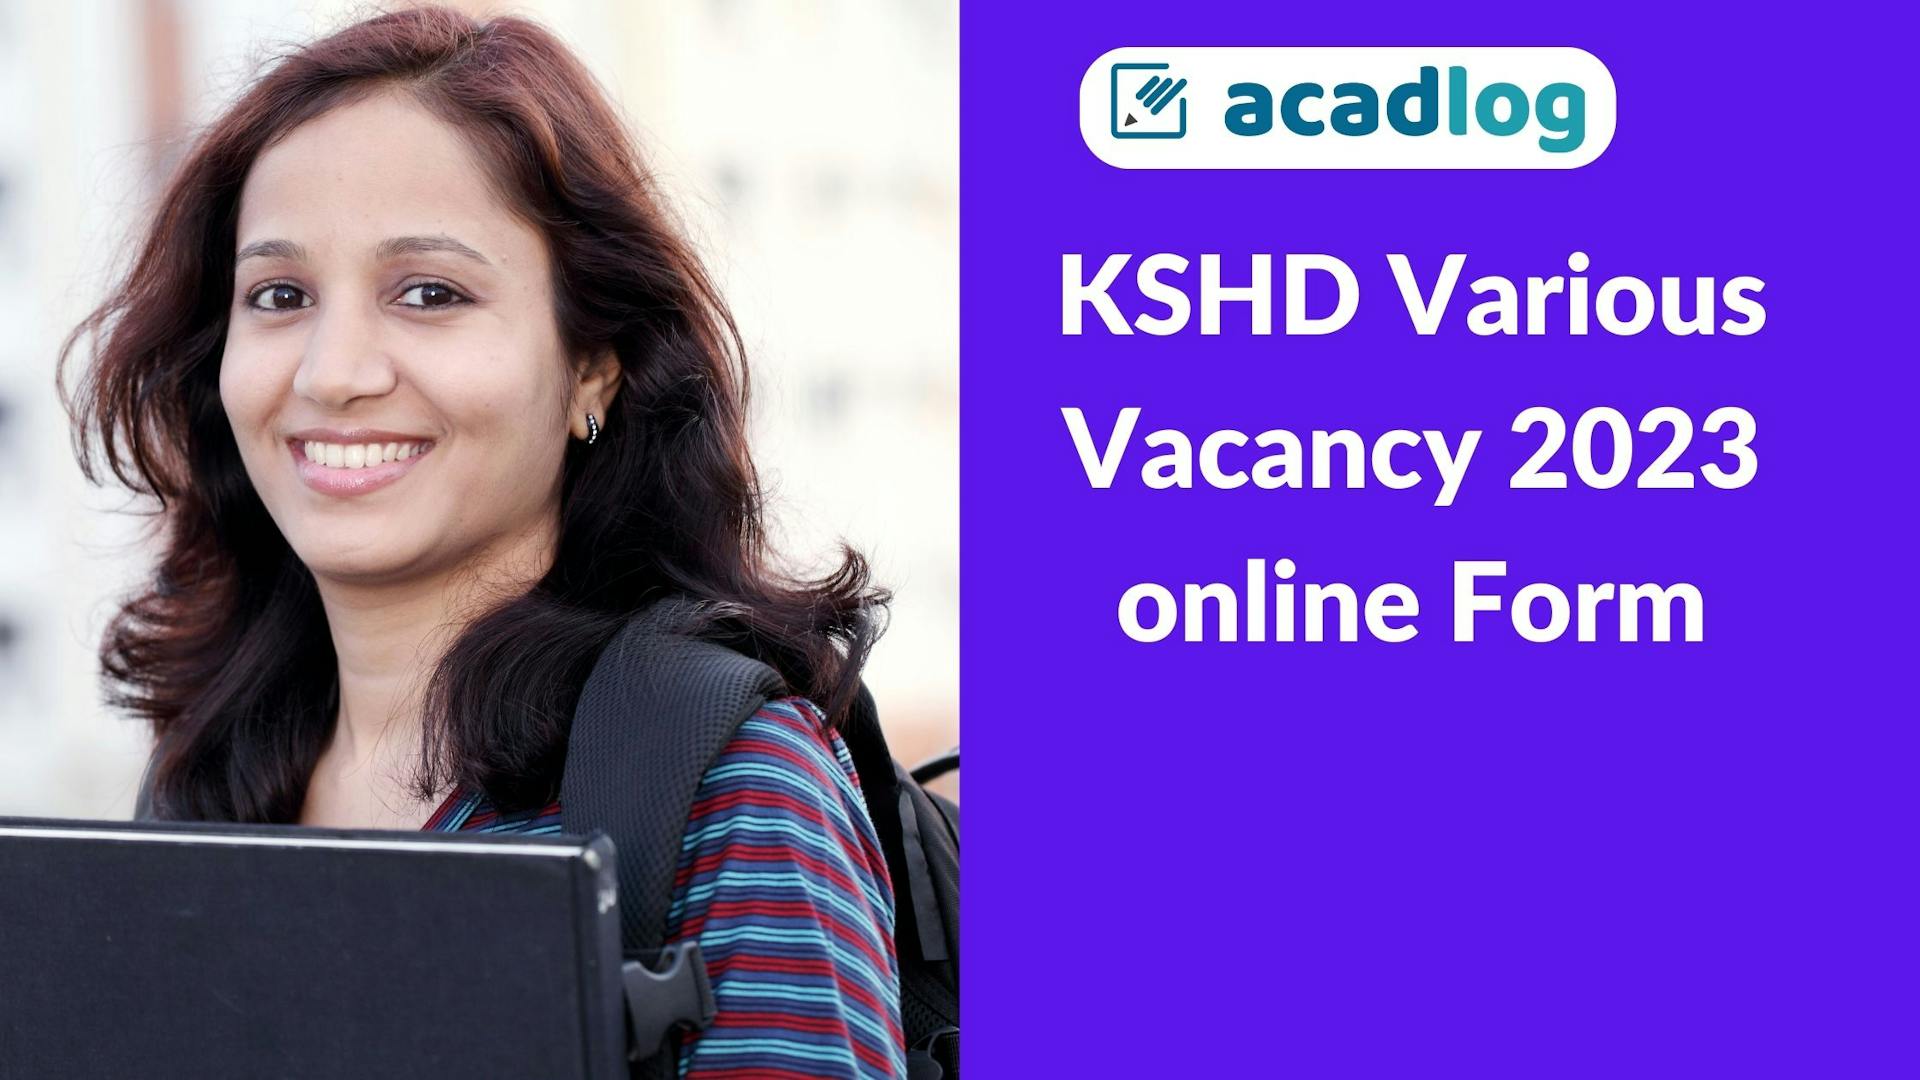 KSHD Various Vacancy 2023 online Form